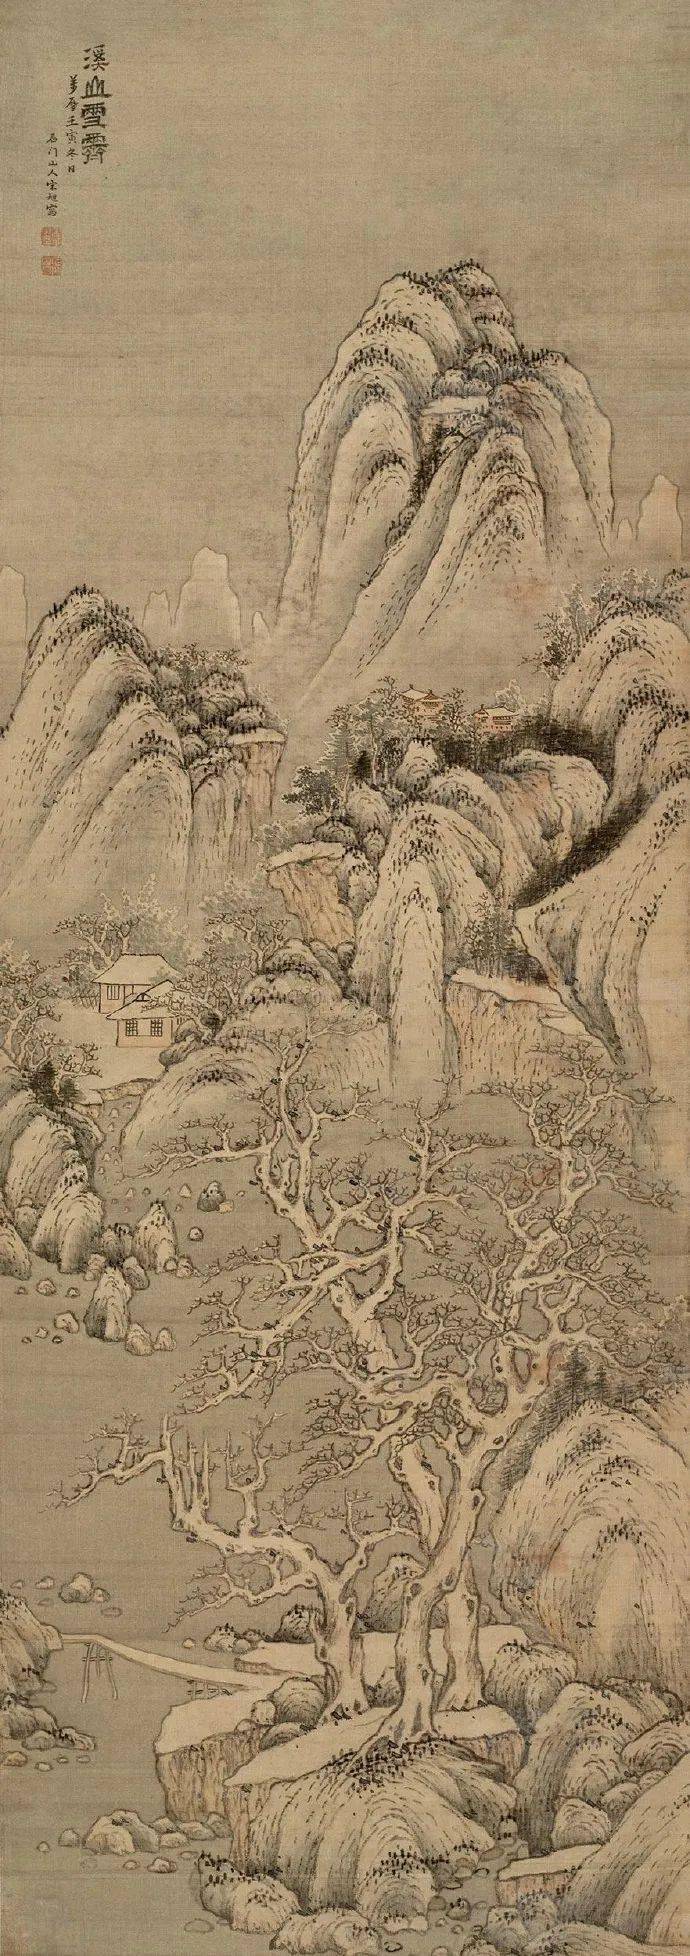 中国国画历代精品高清展:(1409)明 宋旭《溪山雪霁图》